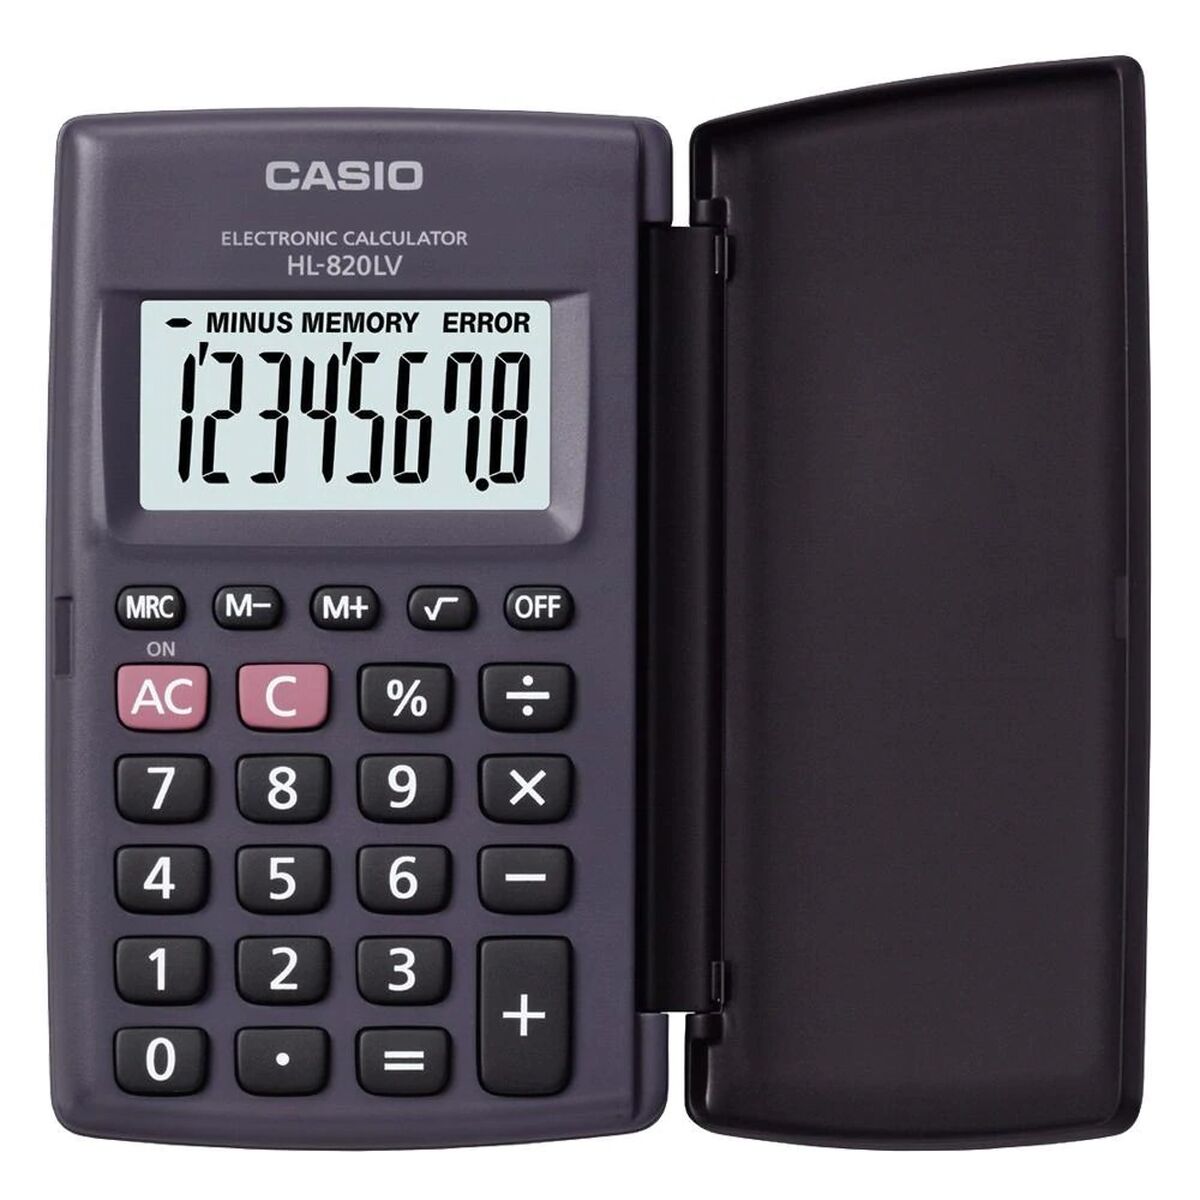 Calculator Casio HL-820LV-BK Grey Resin (10 x 6 cm)